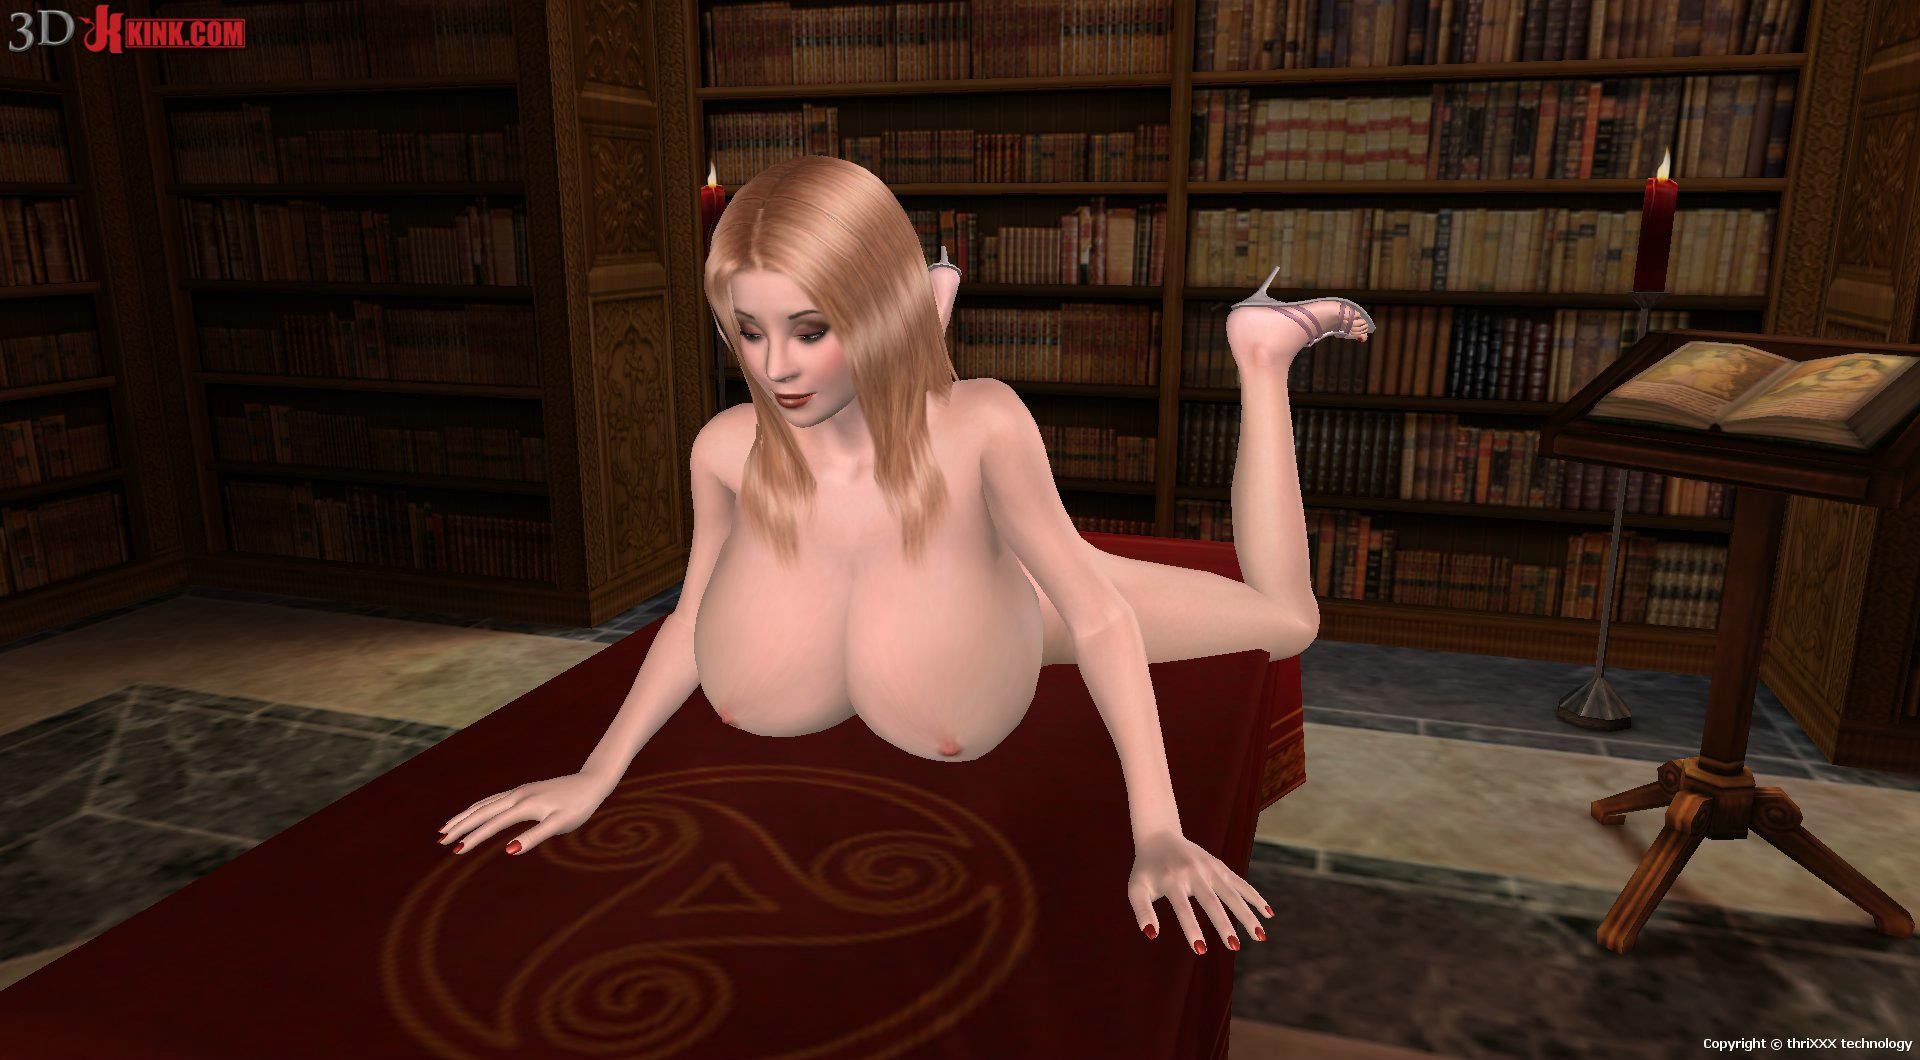 Fille blonde avec des seins monstrueux dans une scène de sexe lesbien en 3d virtuelle.
 #69356023